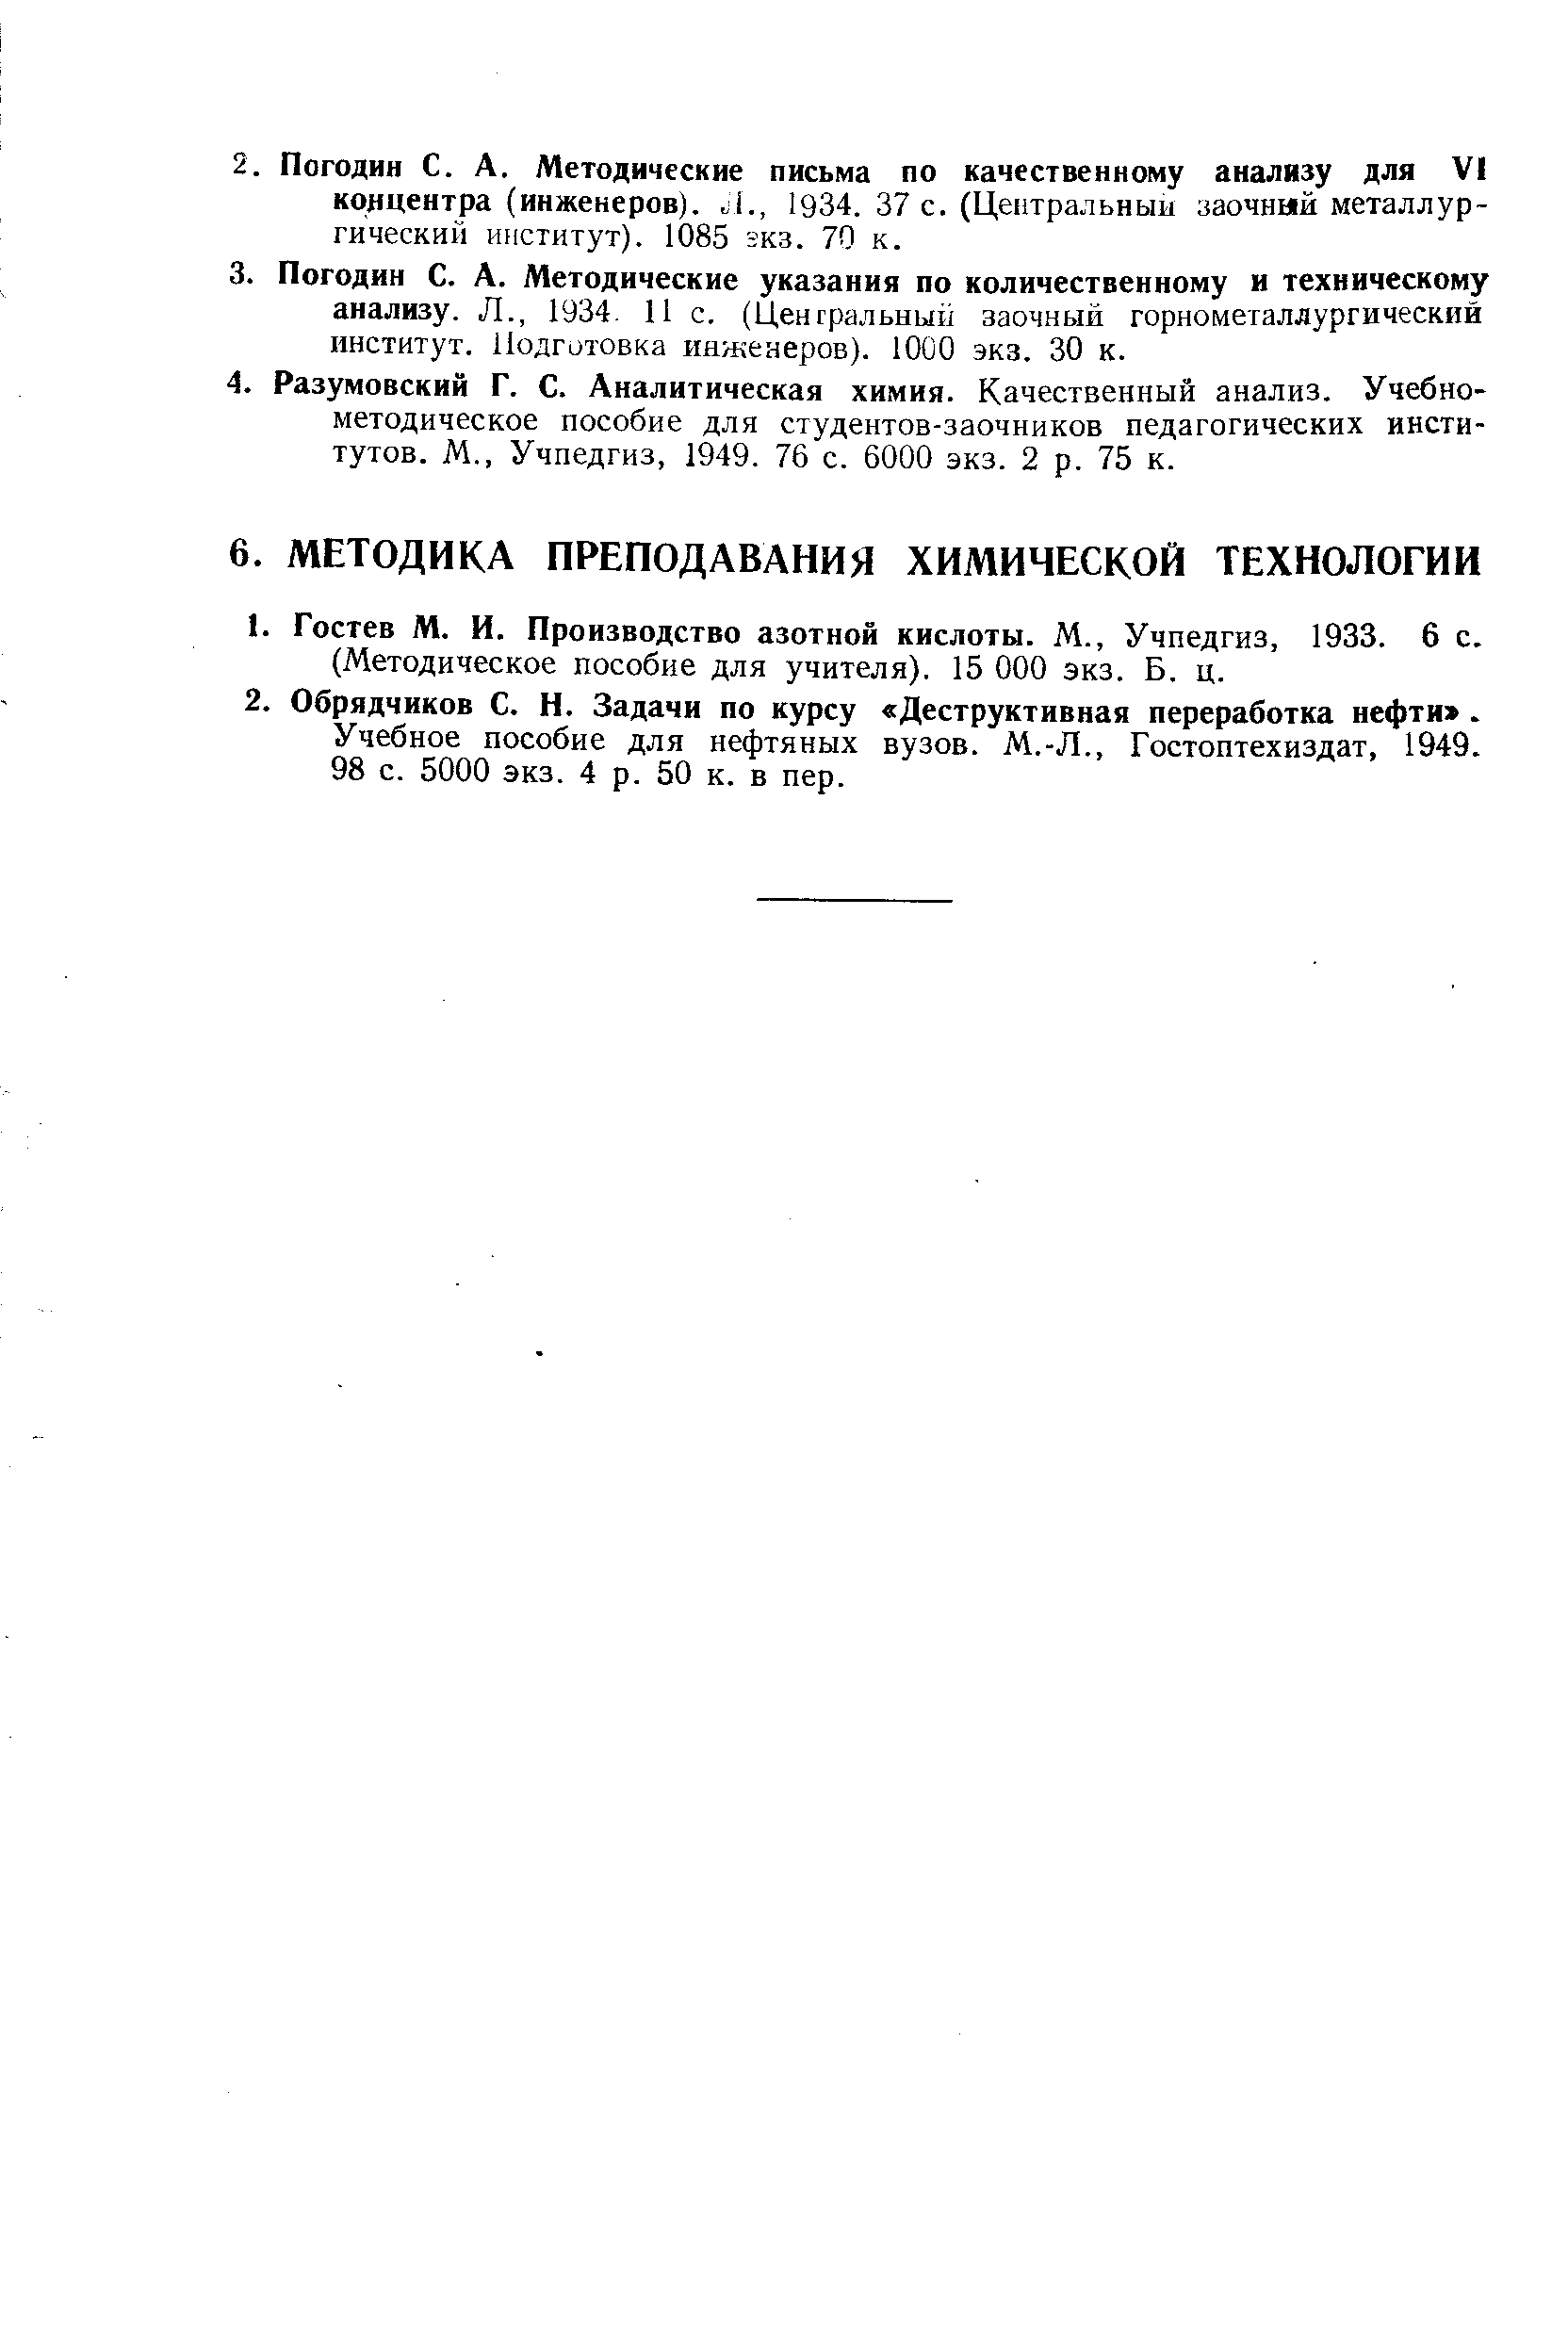 Учебное пособие для нефтяных вузов. М.-Л., Гостоптехиздат, 1949.